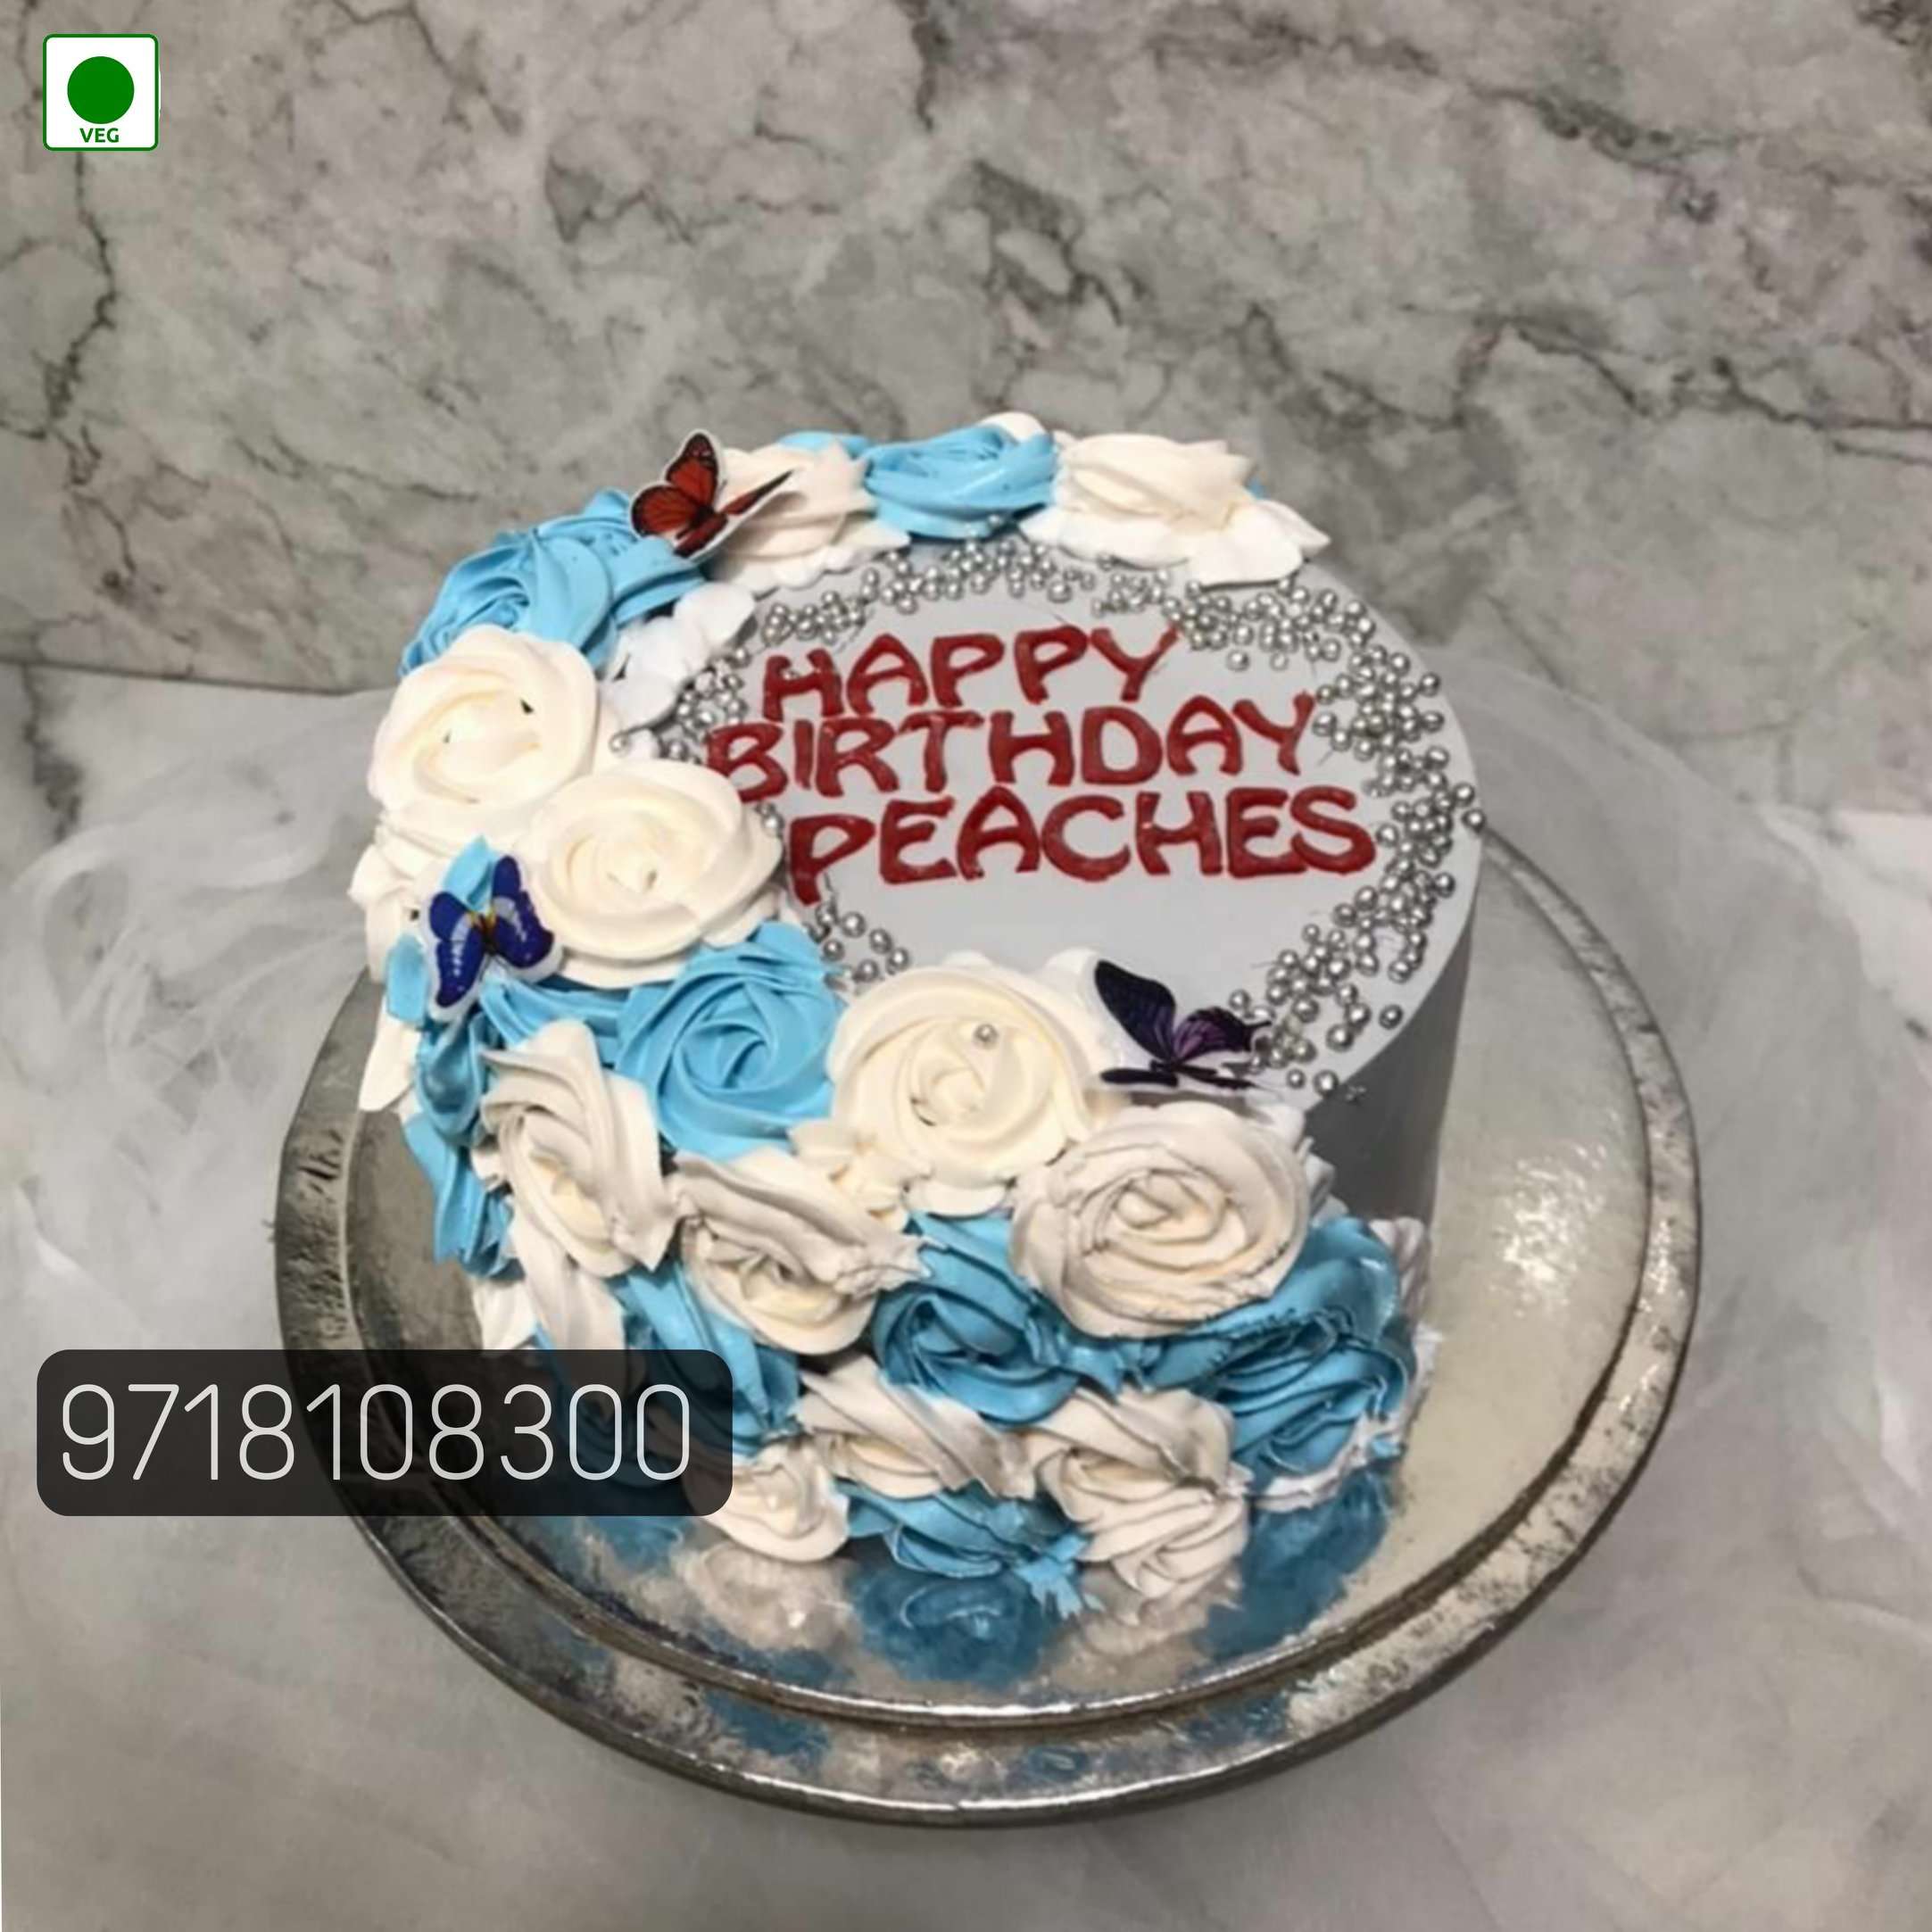 Flower cakes / Floral cakes - Gocakes.lk | Fresh flower cakes